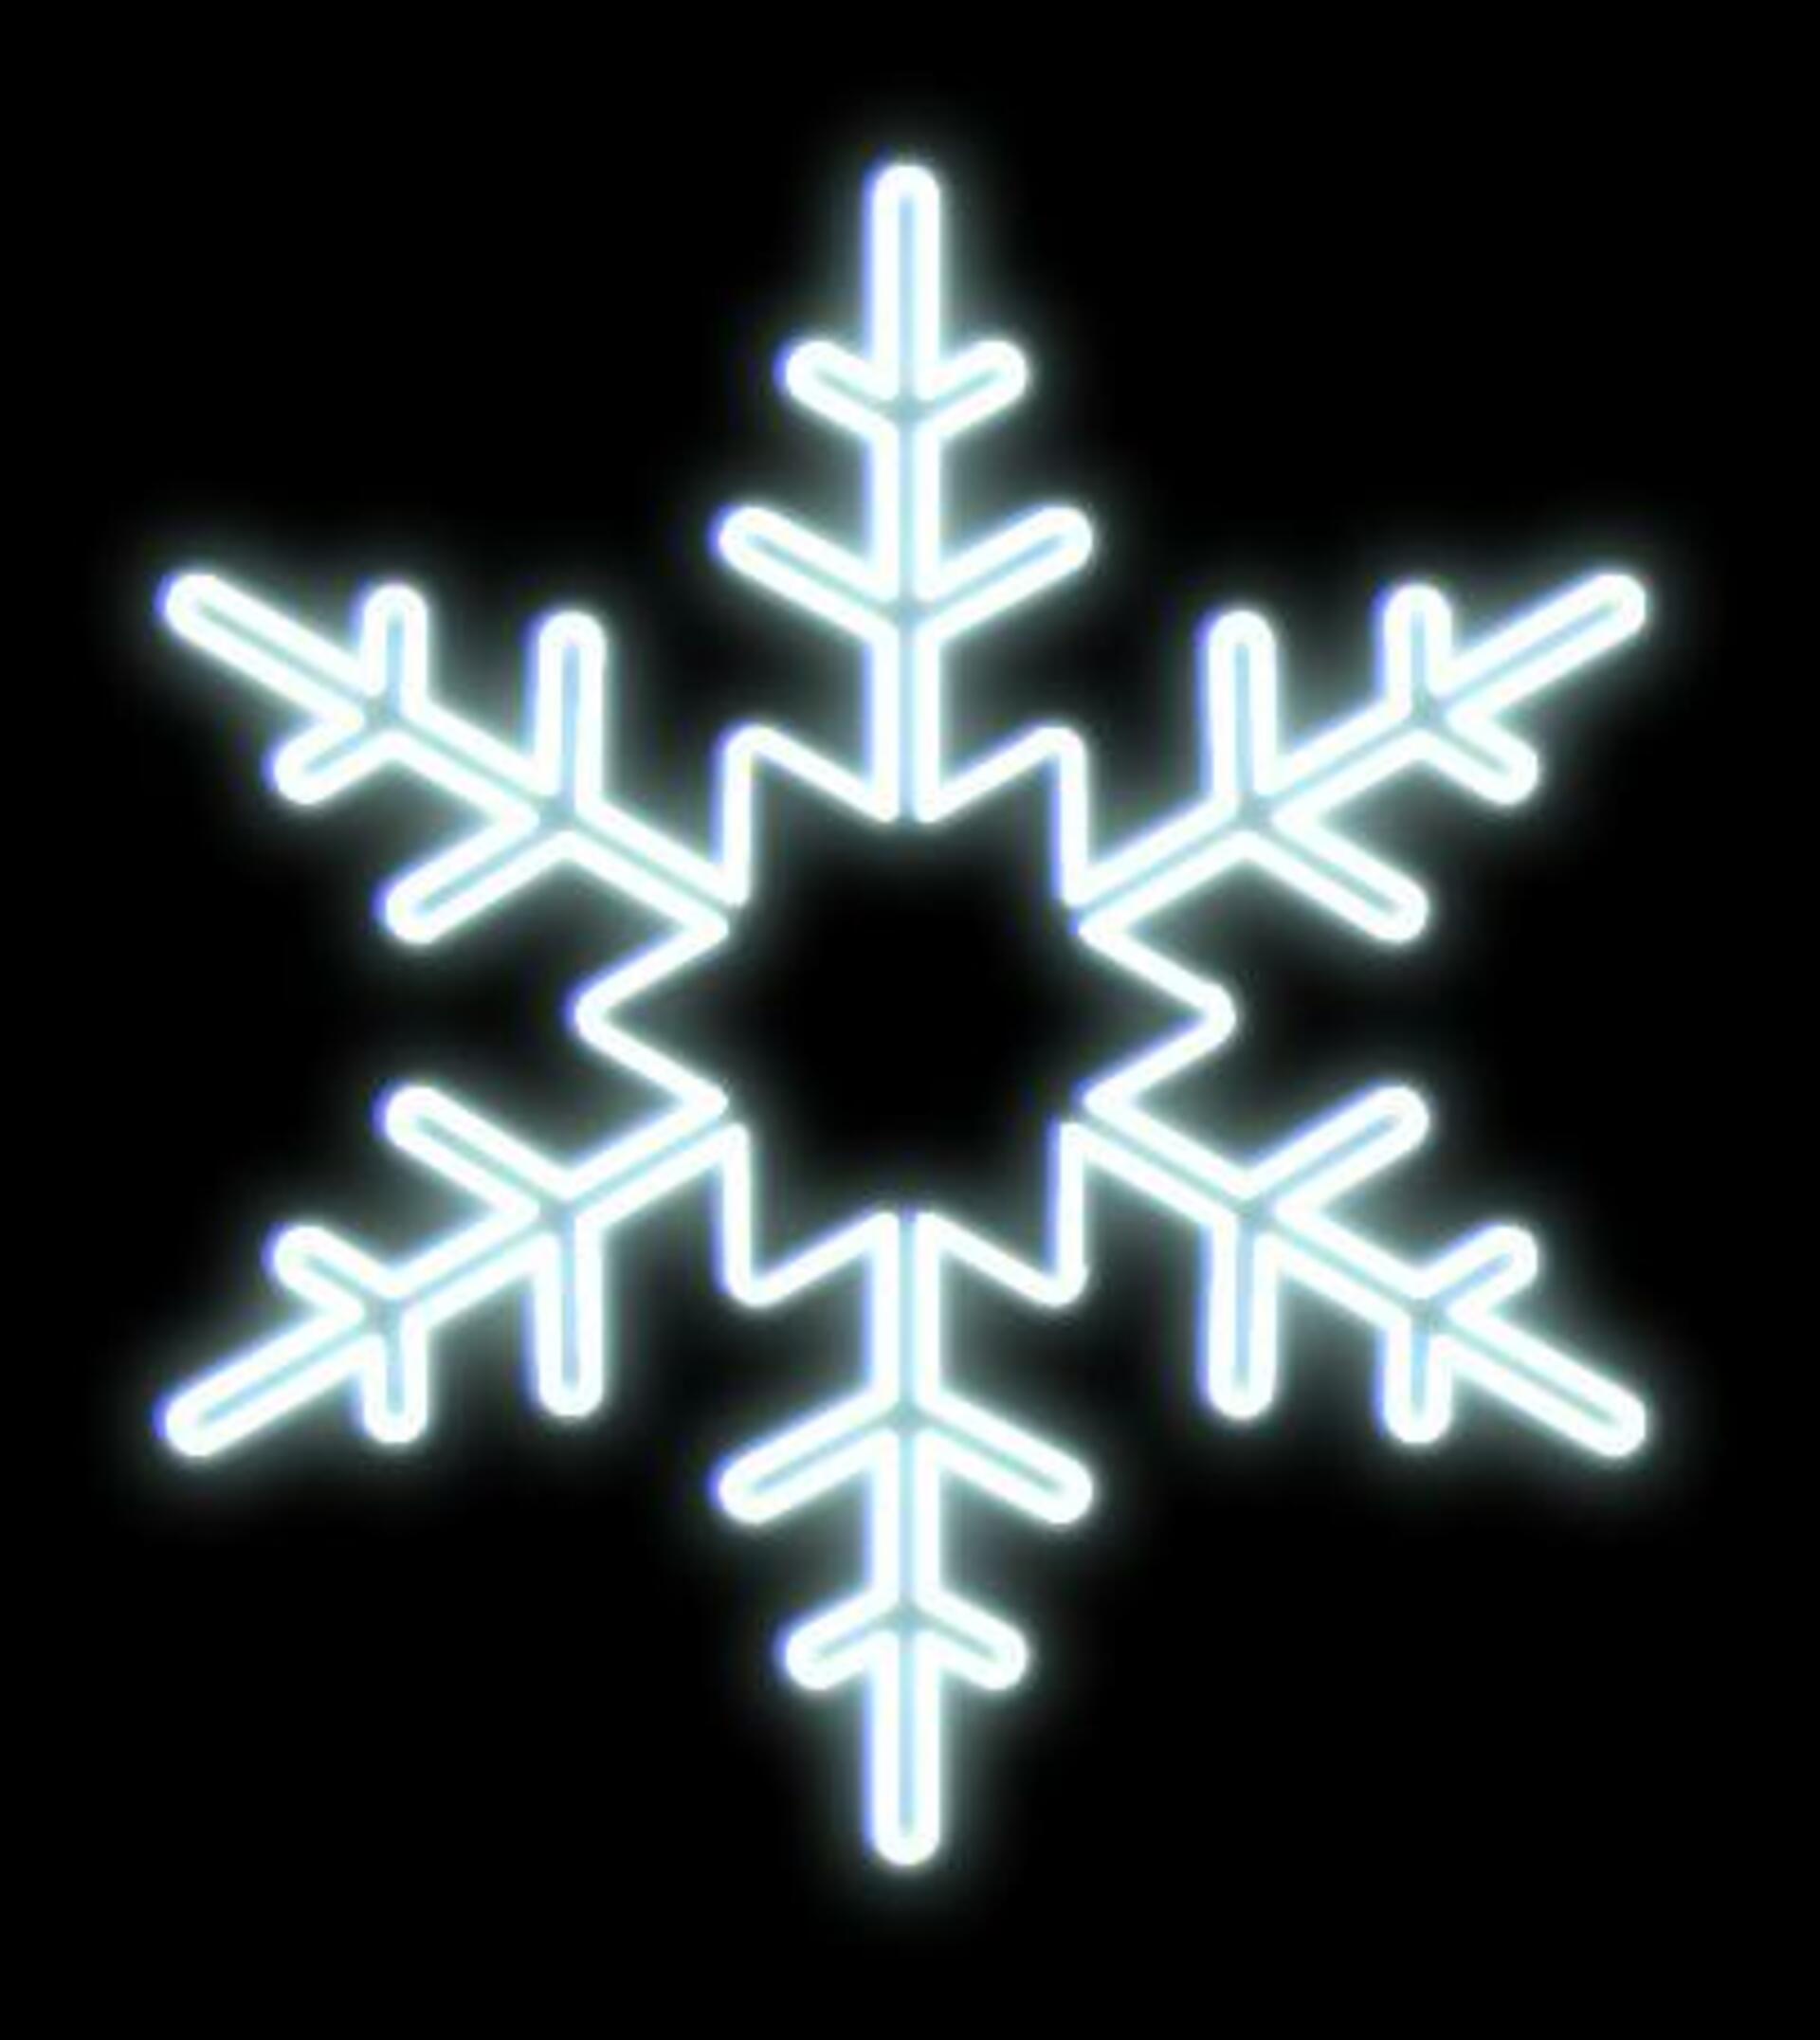 DecoLED LED světelná vločka s hvězdou ve středu na VO, pr .80 cm, ledově bílá